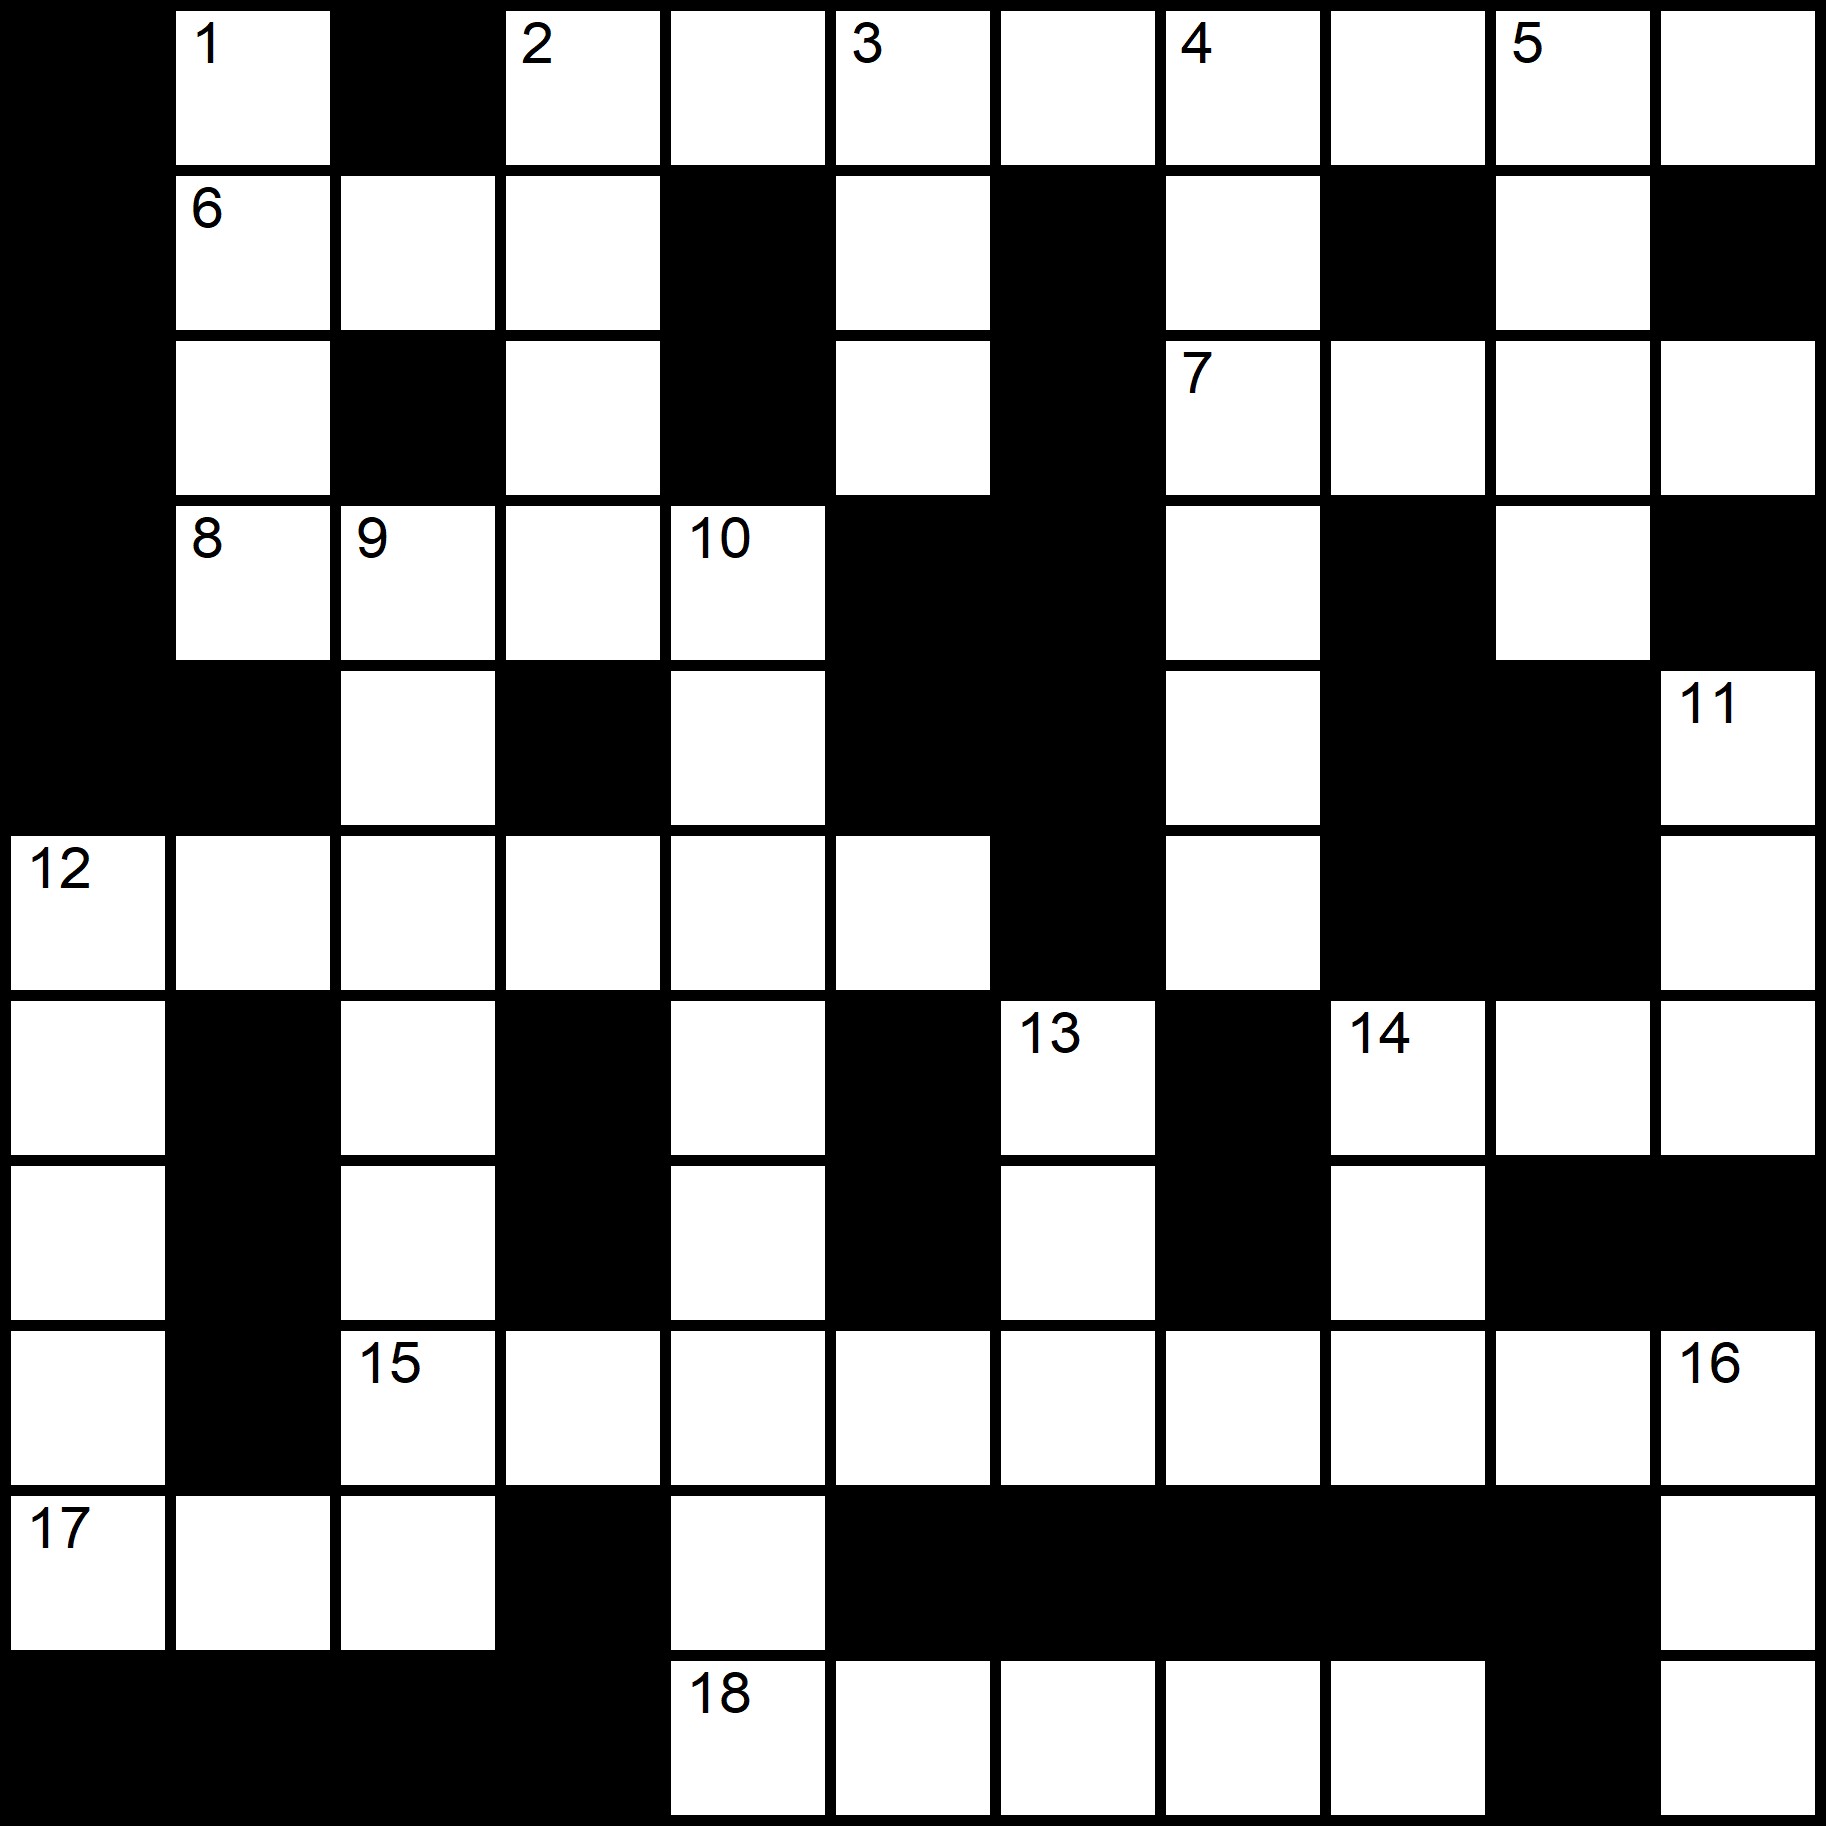 English Crosswords -
Placidus Flora - Crossword number fifteen